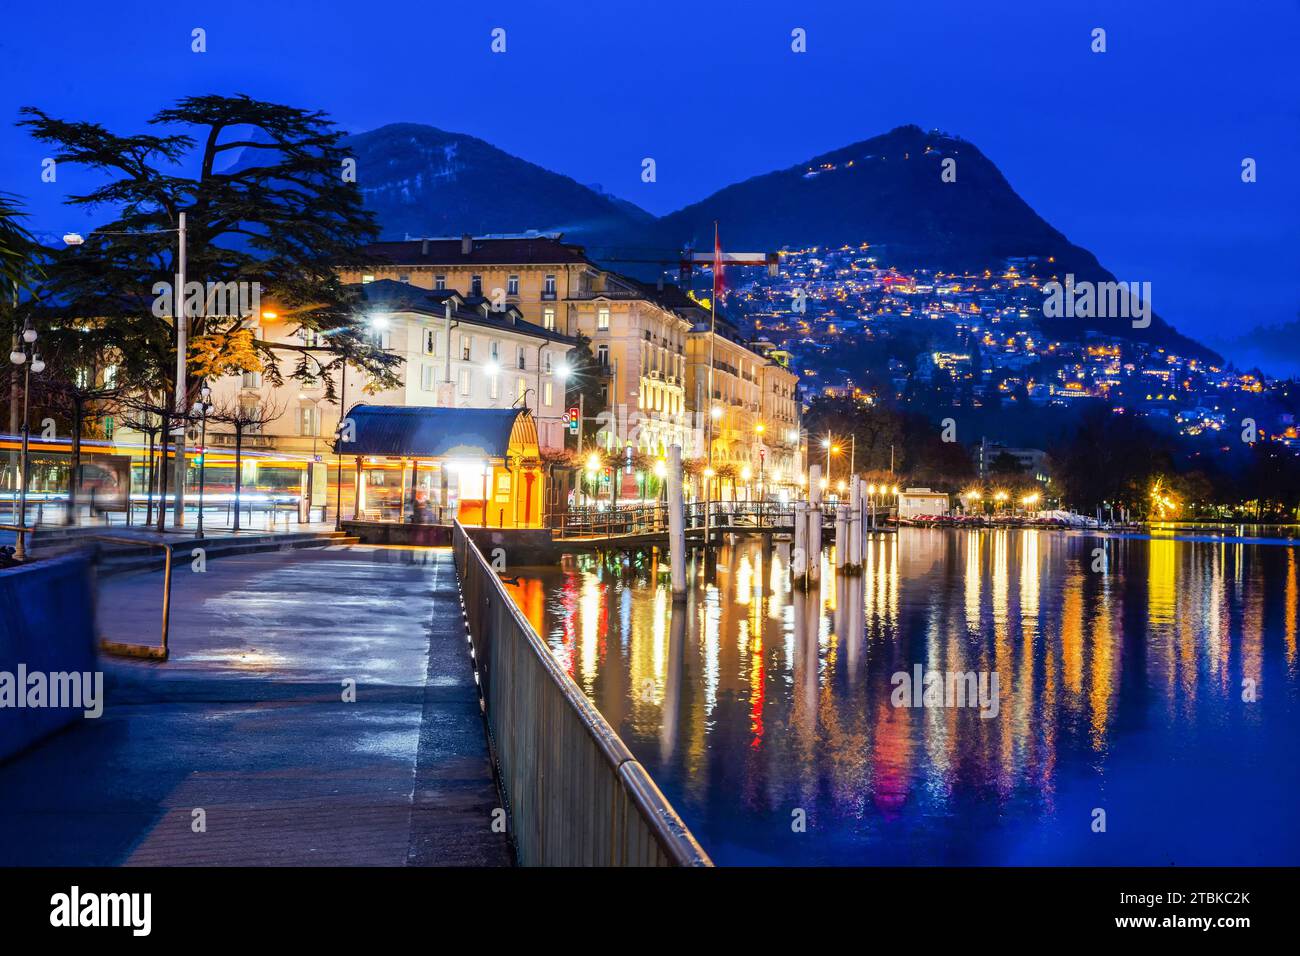 Fantastischer Blick auf die beleuchtete Stadt Lugano, den Damm Giocondo Albertoll, den Berg Bre, das Kasino (?) Bukilding. Reflexionen im Wasser des Luganer Sees Stockfoto